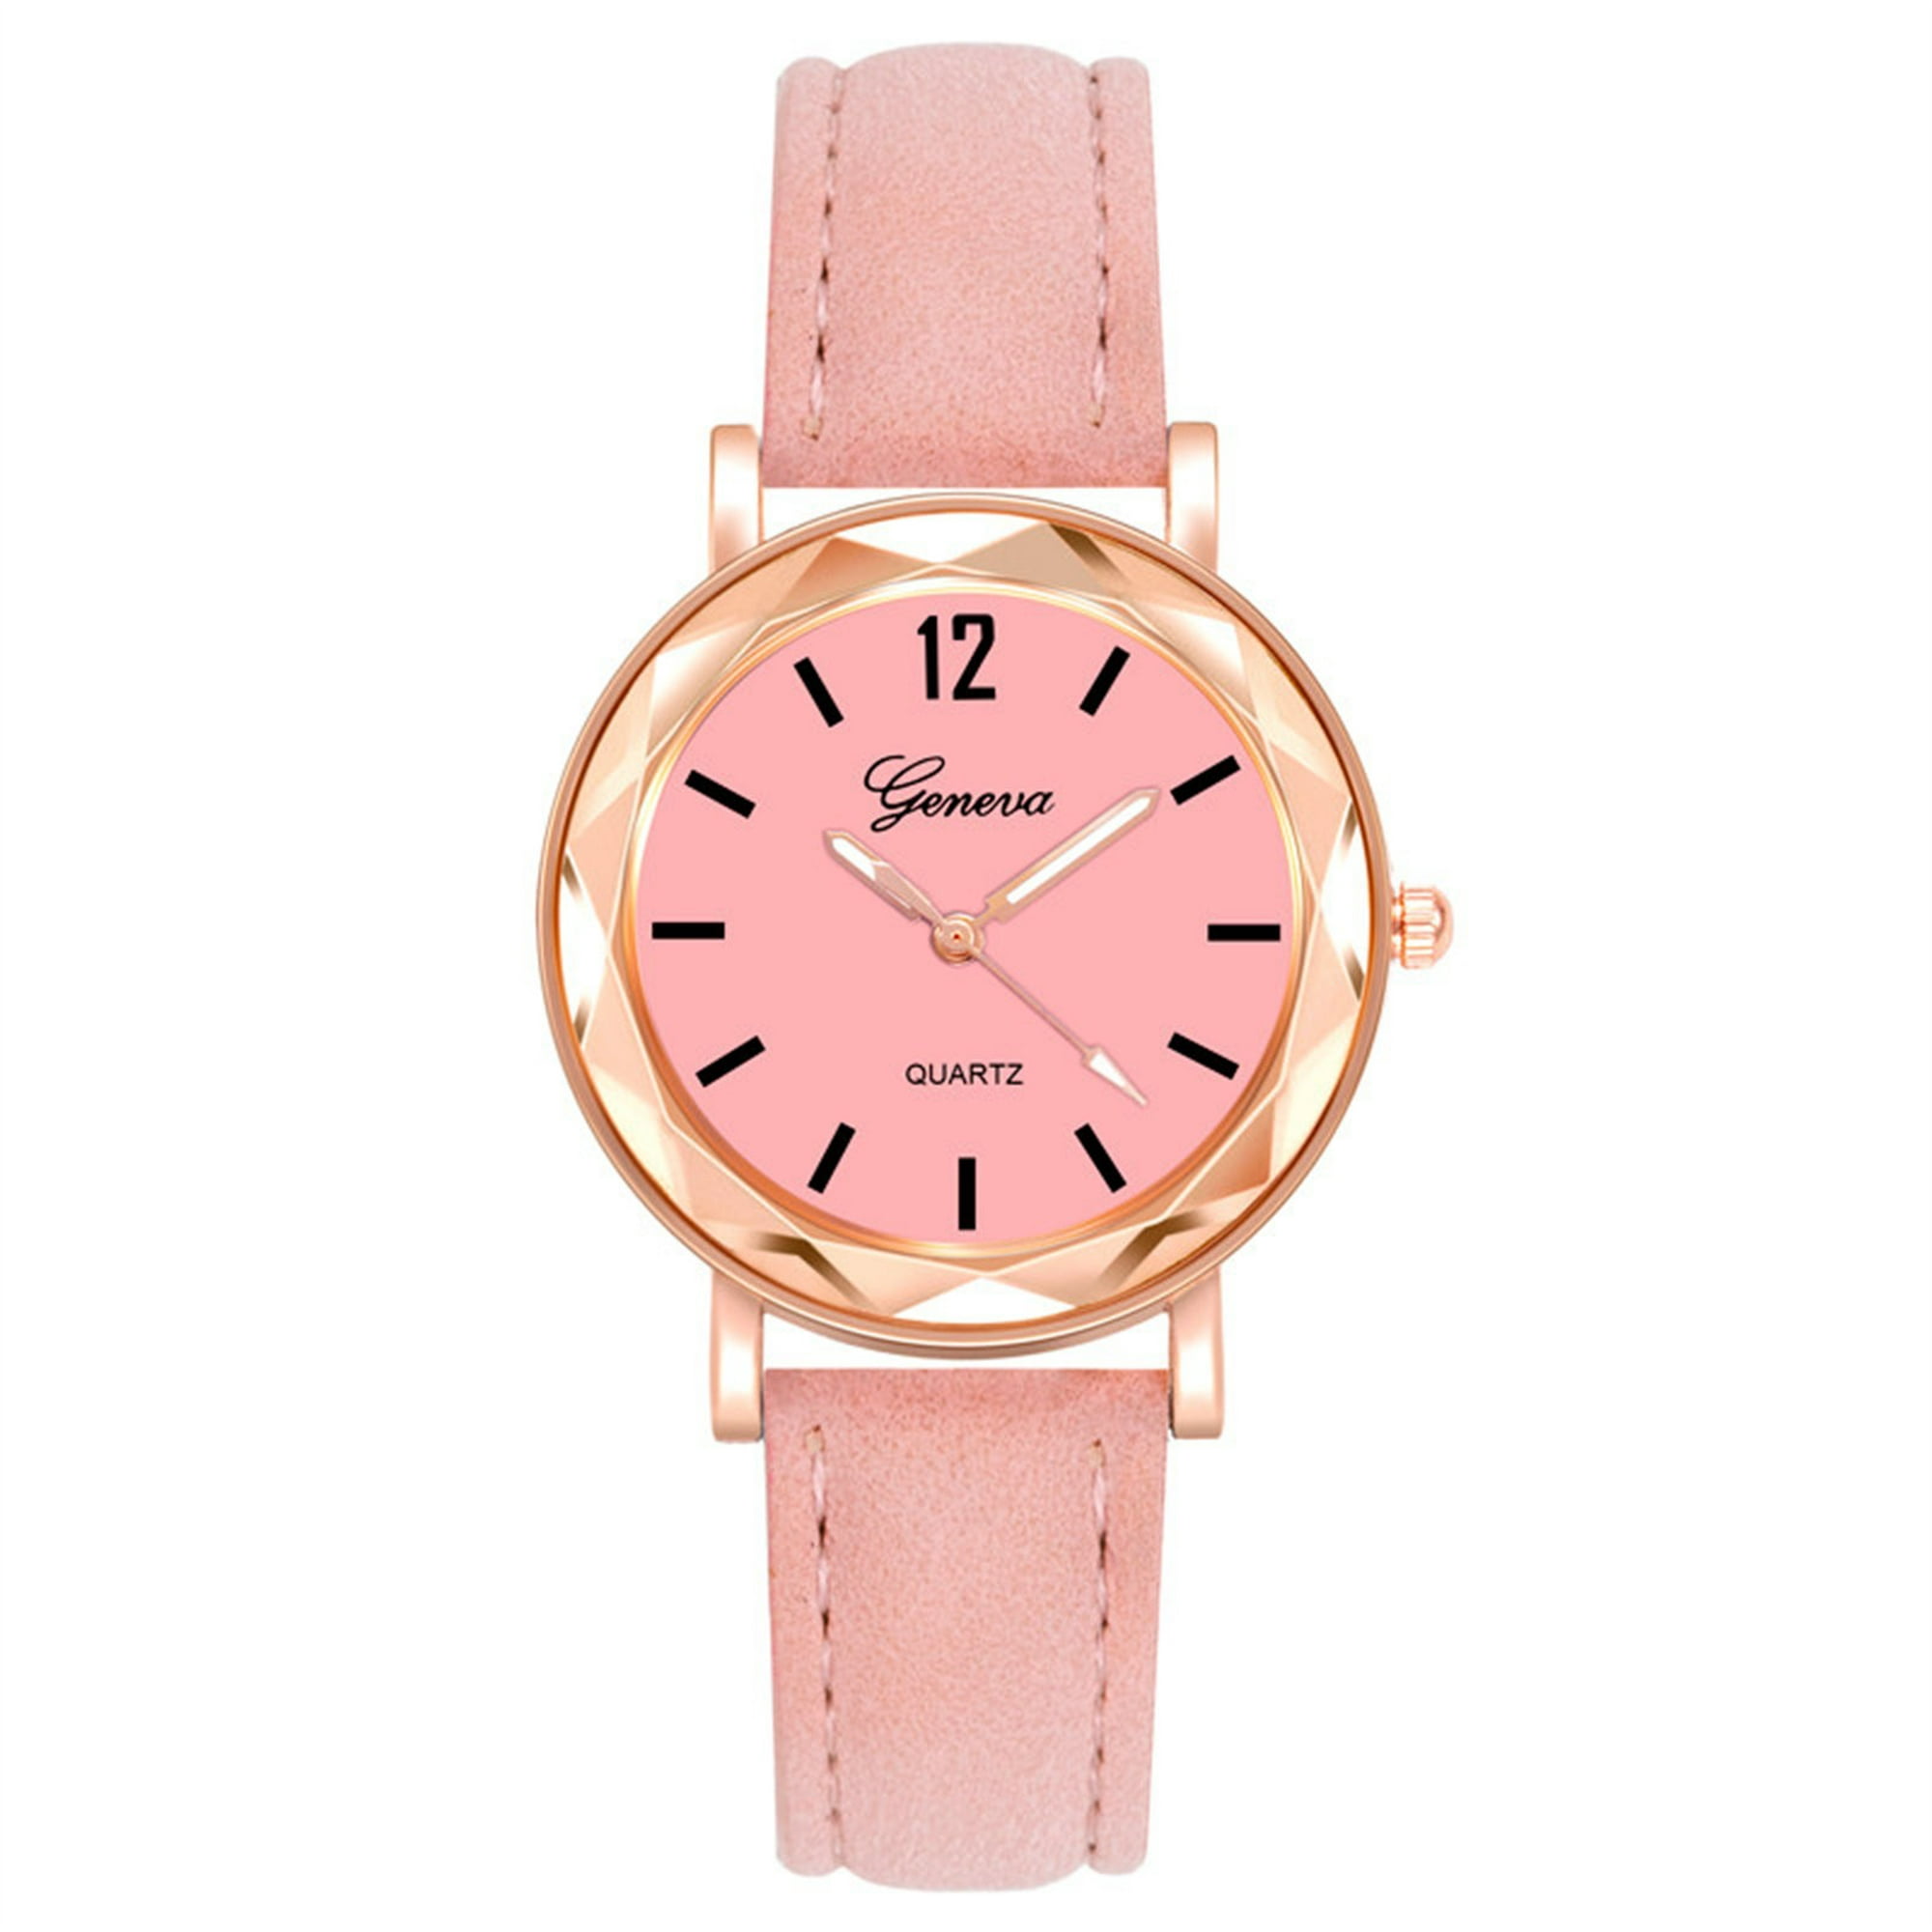 Relojes de moda para mujer, para niños, niñas, natación, deportes, digital,  impermeable, reloj de pulsera para mujer (color rosado)